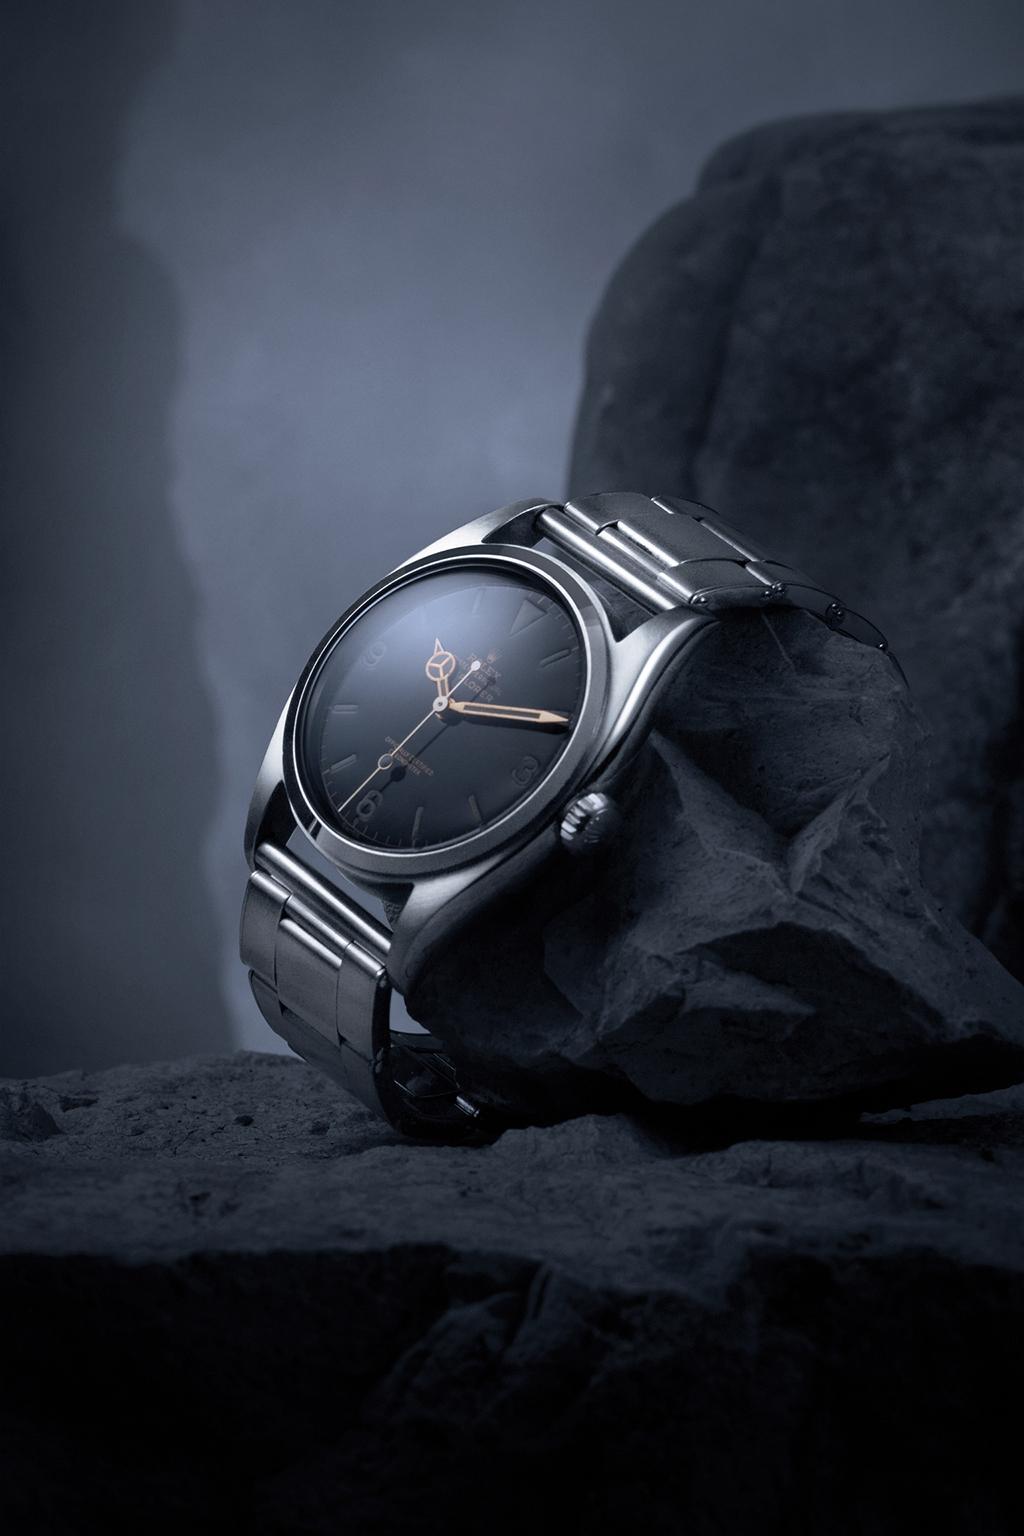 História do Explorer EXPLORER O feito épico foi tão emblemático das qualidades de precisão e confiabilidade associadas ao relógio Oyster que a marca lançou em 1953 um modelo especialmente criado para